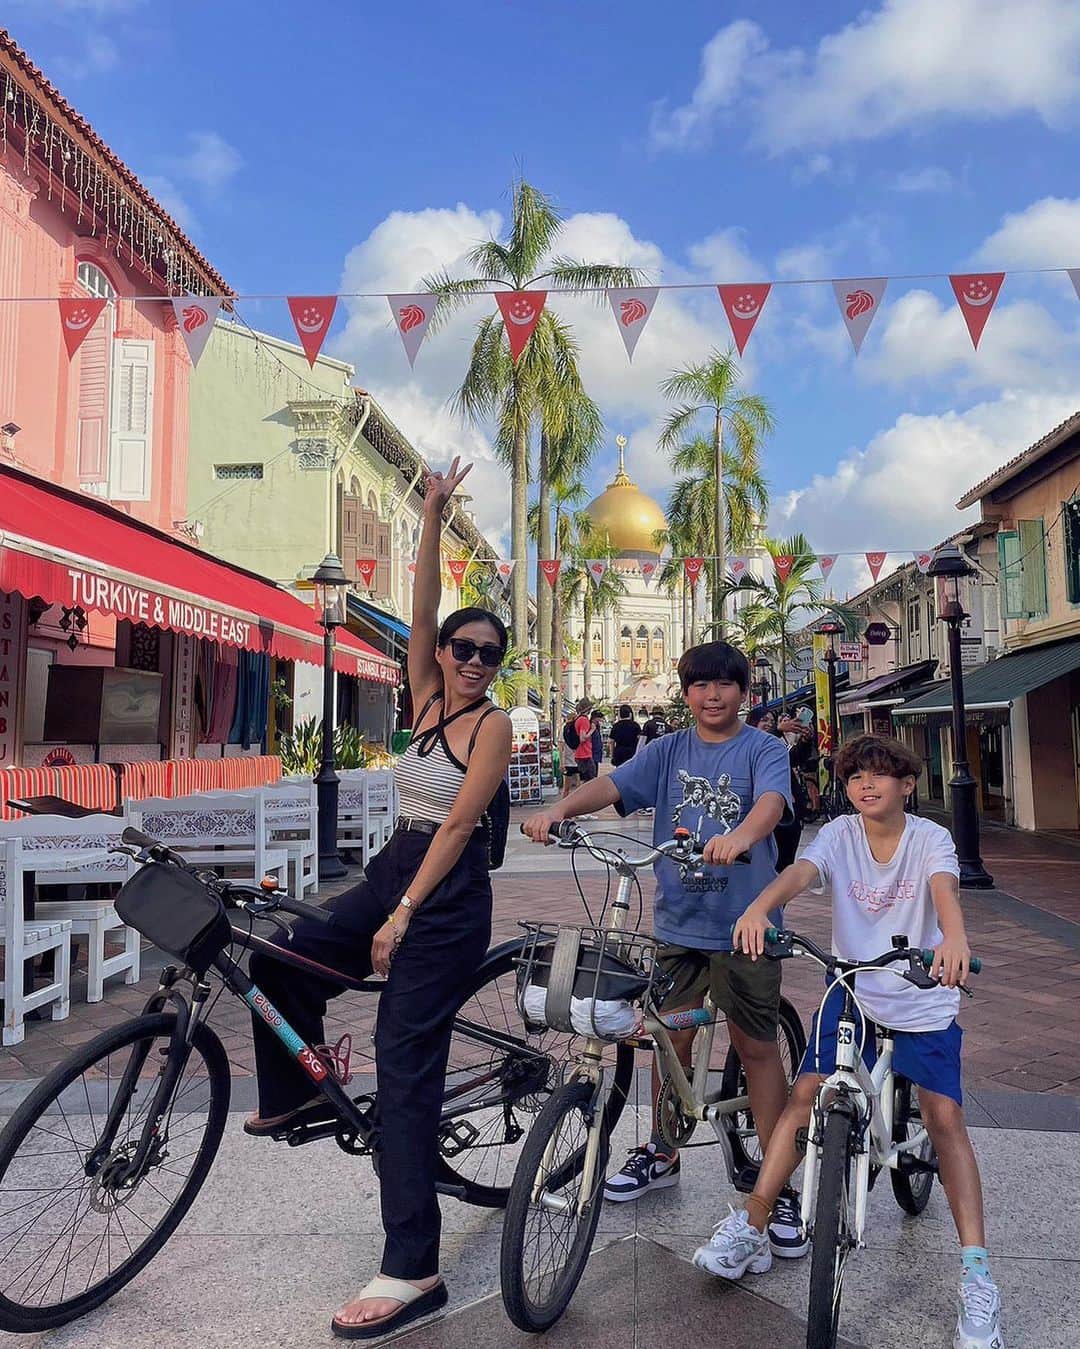 王君萍のインスタグラム：「二訪新加坡🇸🇬 幾年前來得匆忙，可以說是快閃～ 這次終於有充足時間能好好認識這個地方  記得有天，我們起了大早☀️  穿上簡便褲裝！抵達腳踏車騎乘活動 @letsgotoursingapore  我跟亞歷和阿弟各自選了台適合自己的車 由導遊領頭，帶著隊伍穿越新加坡的街道 參觀了具有歷史意義的地標 並向我們介紹不同建築的故事 還拍了好多照片！！其中特別喜歡 在蘇丹回教堂前我們跟自己腳踏車的合照  若你想認識這個多元文化的國家 可以報名「小印度區遊戲與導覽行程」 @tribetours 的導覽員非常專業 會用遊戲及故事的方式帶領旅客 而且很有耐心～對好奇寶寶的我有問必答！ 印度的蔬菜、點心口味跟我們平常的飲食大不相同 但看著亞歷和阿弟嘗試實在太有趣了～  此趟旅程中，最有成就感的 大概就是在 @wildflowerstudiosg  畫了一幅畫帶回家送給老公 我也才發現畫畫是一件多療癒的事 它可以讓你很平靜，就只專注在眼前的繪畫裡 也是個很適合帶小朋友來的活動 孩子的思想很簡單，他們不會害怕畫錯 所以都畫得很快！畫完就在旁邊跟貓咪玩  太多想分享的～ 但絕對是親自來一趟才知道有多好玩 這次透過SingapoRewards預定的行程 每項都讓我更喜歡這個國家💕 跟之前超不一樣！ 不再只是去大家都知道的大景點 而是能參與更多不同的內容 除了感到很驚喜，也實現了 我想在其他國家體驗特別活動的小願望  也要來好好向大家介紹 “新加坡獎勵”計劃 #SingapoRewards  這是由新加坡旅遊局 (STB) 提供的獎勵計劃 提供入境新加坡的旅客 探索、體驗更豐富多元的活動 如果對我的分享有興趣 大家可以從SingapoRewards裡查詢預訂喔！ 還有更多隱藏的旅遊規劃等你們挖掘～  而SingapoRewards裡的所有活動 大人都是可以幫小朋友一起預訂的 很適合親子同遊喔～  #VisitSingapore @visit_singapore」